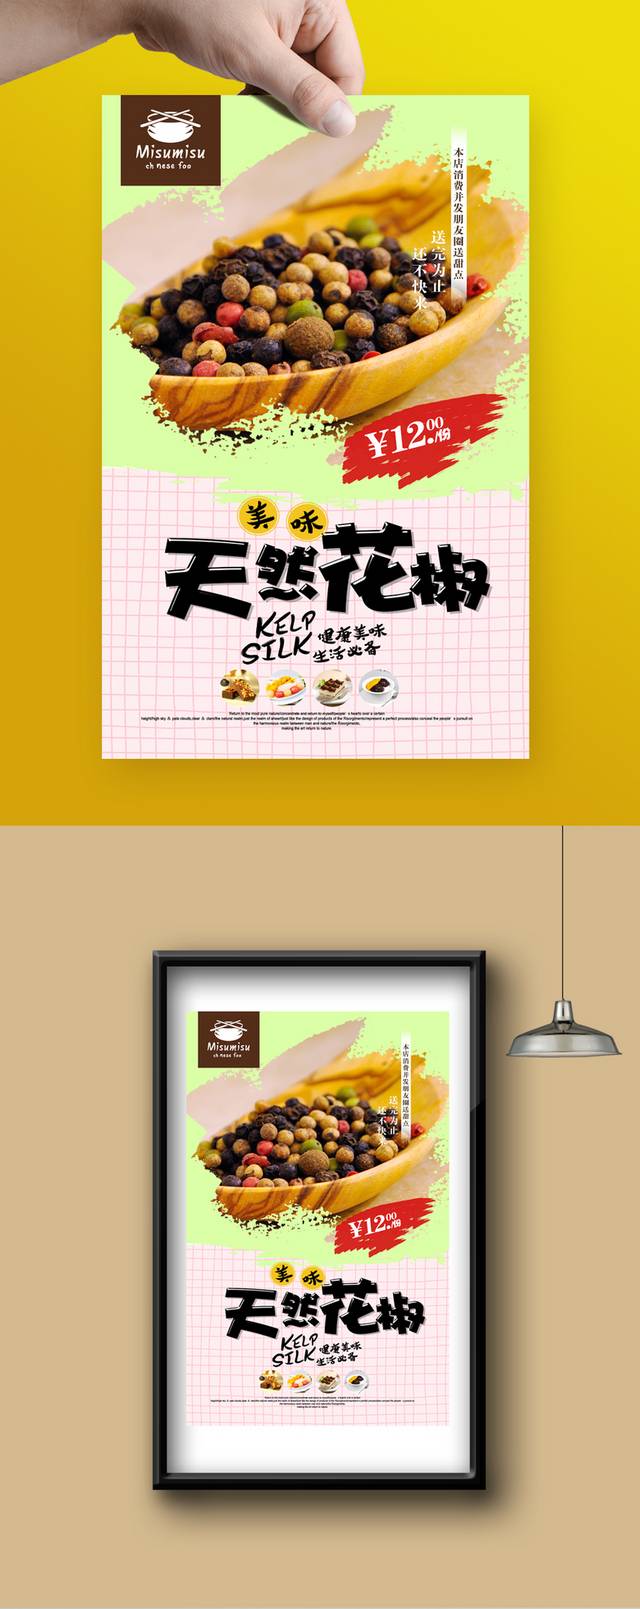 高清花椒促销海报设计psd